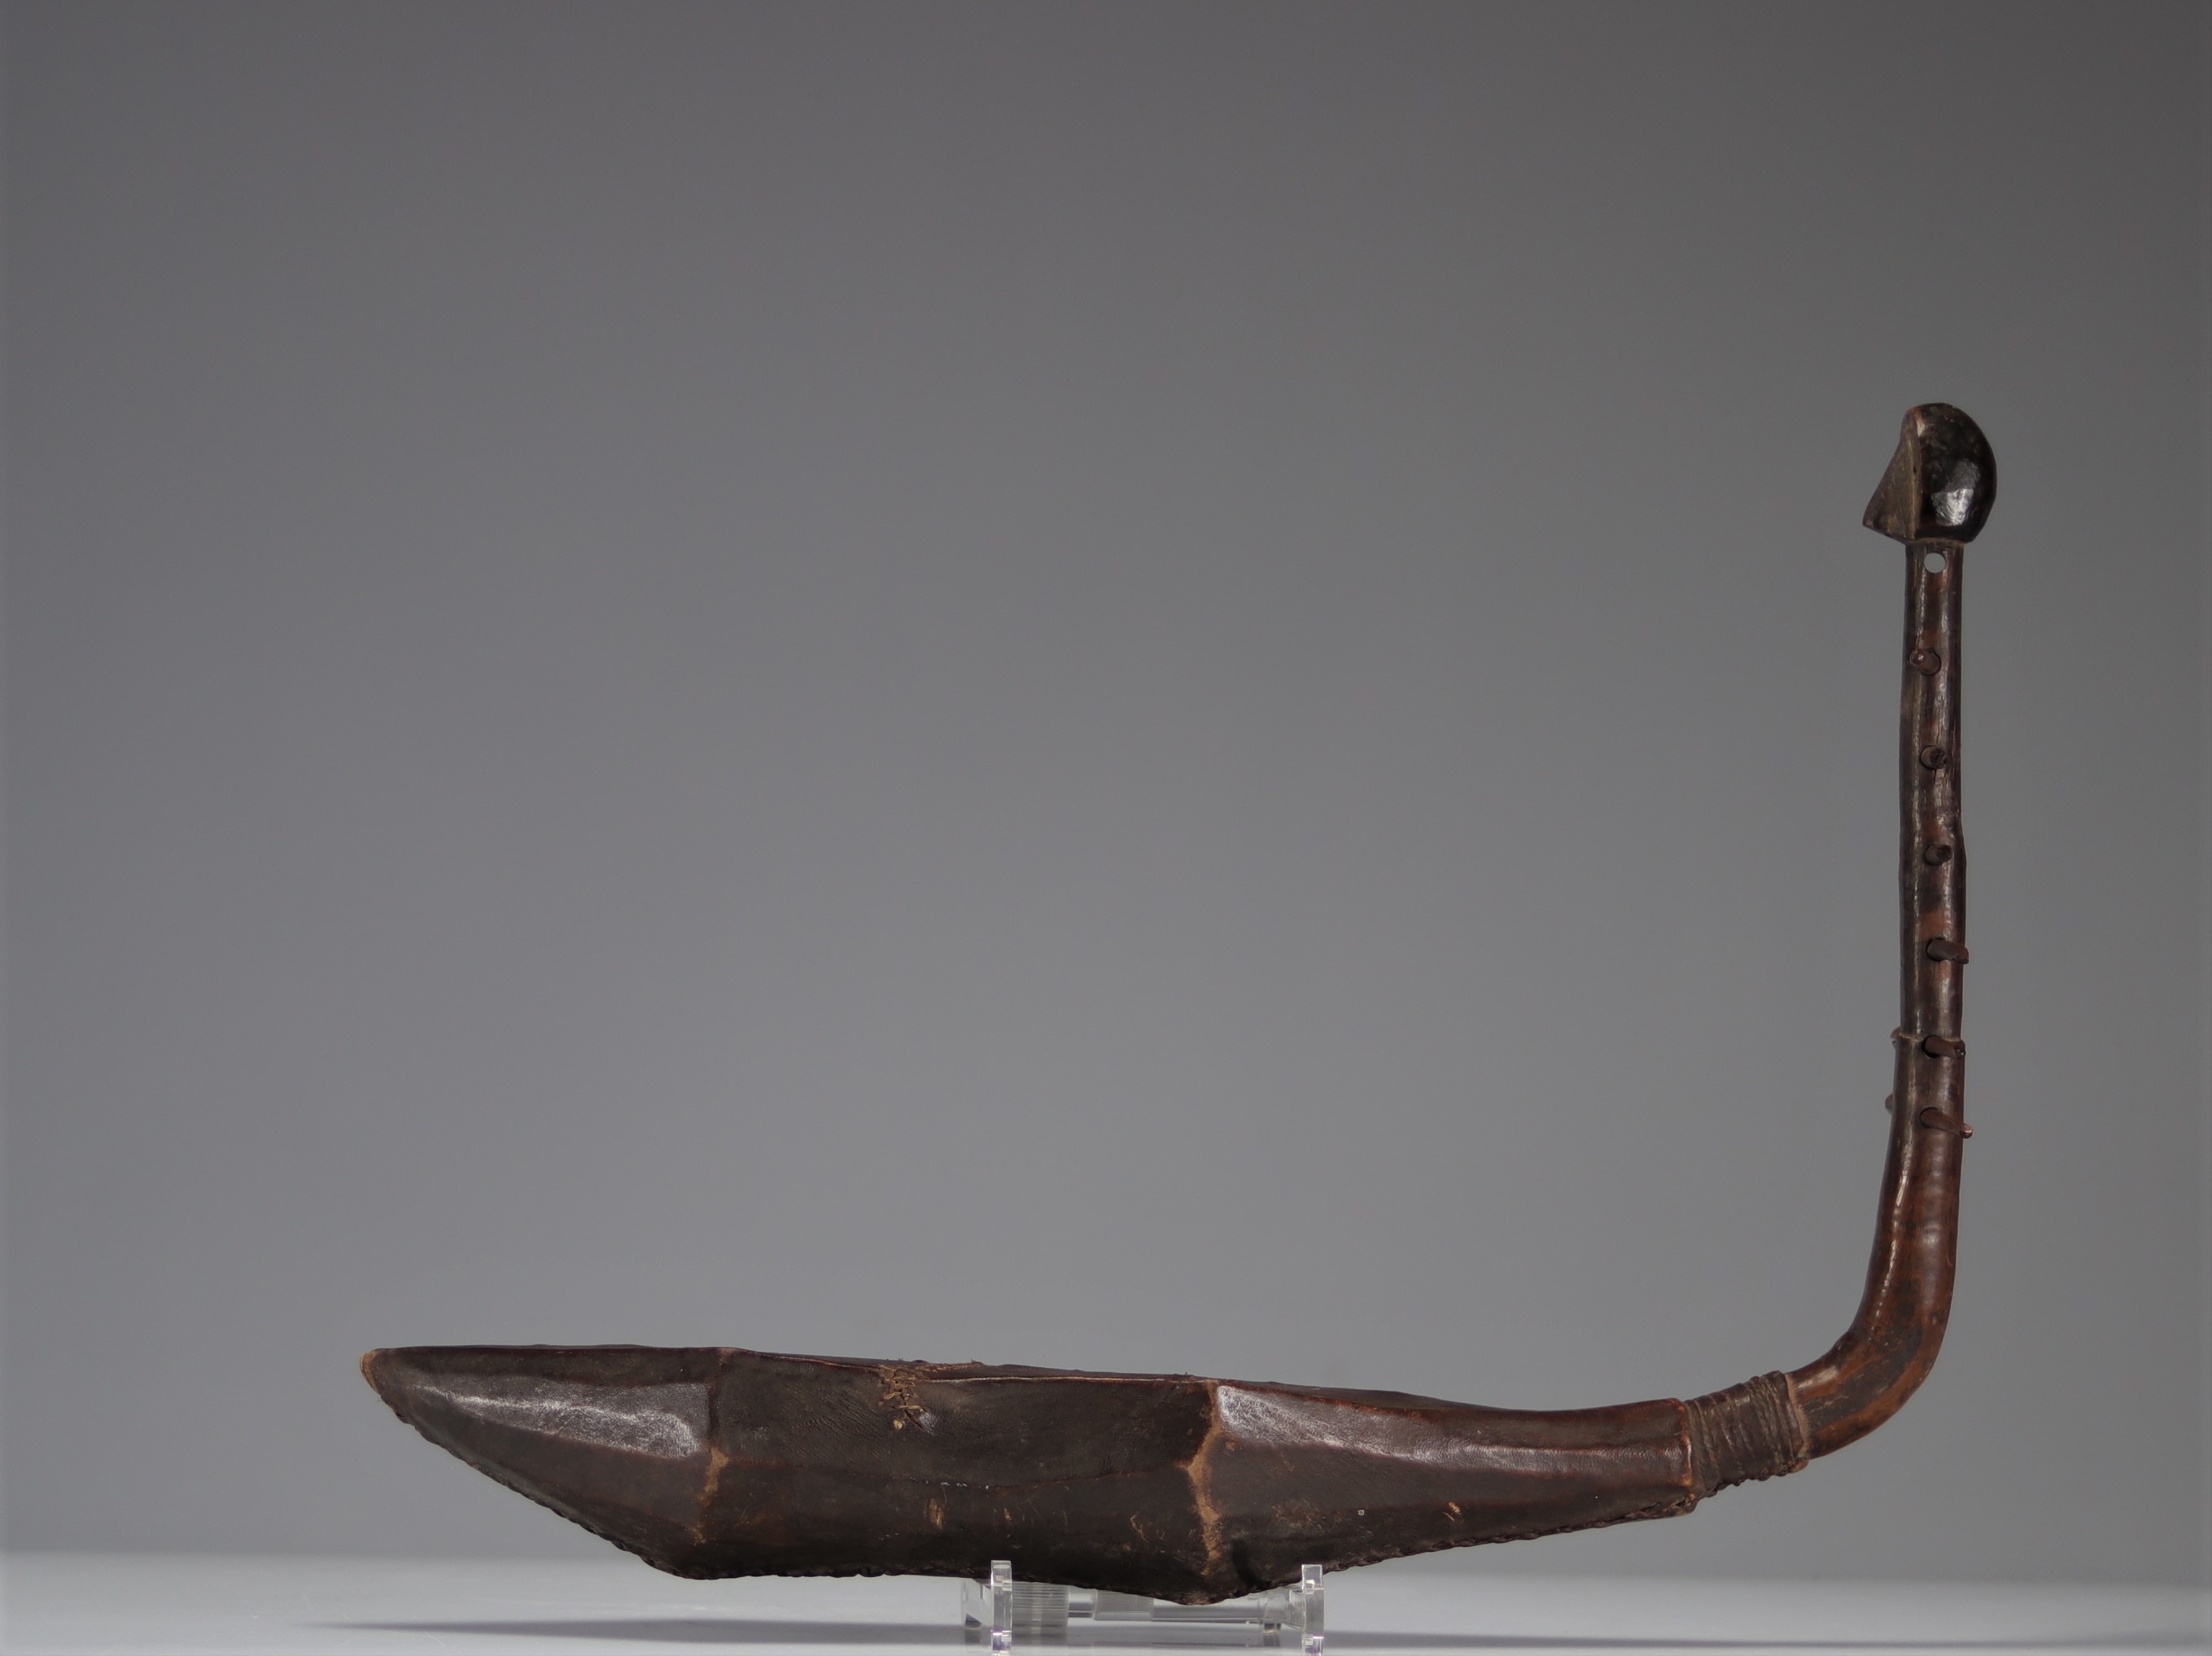 Boa court harp - Zande - Belgian private collection - Dem.Rep.Congo